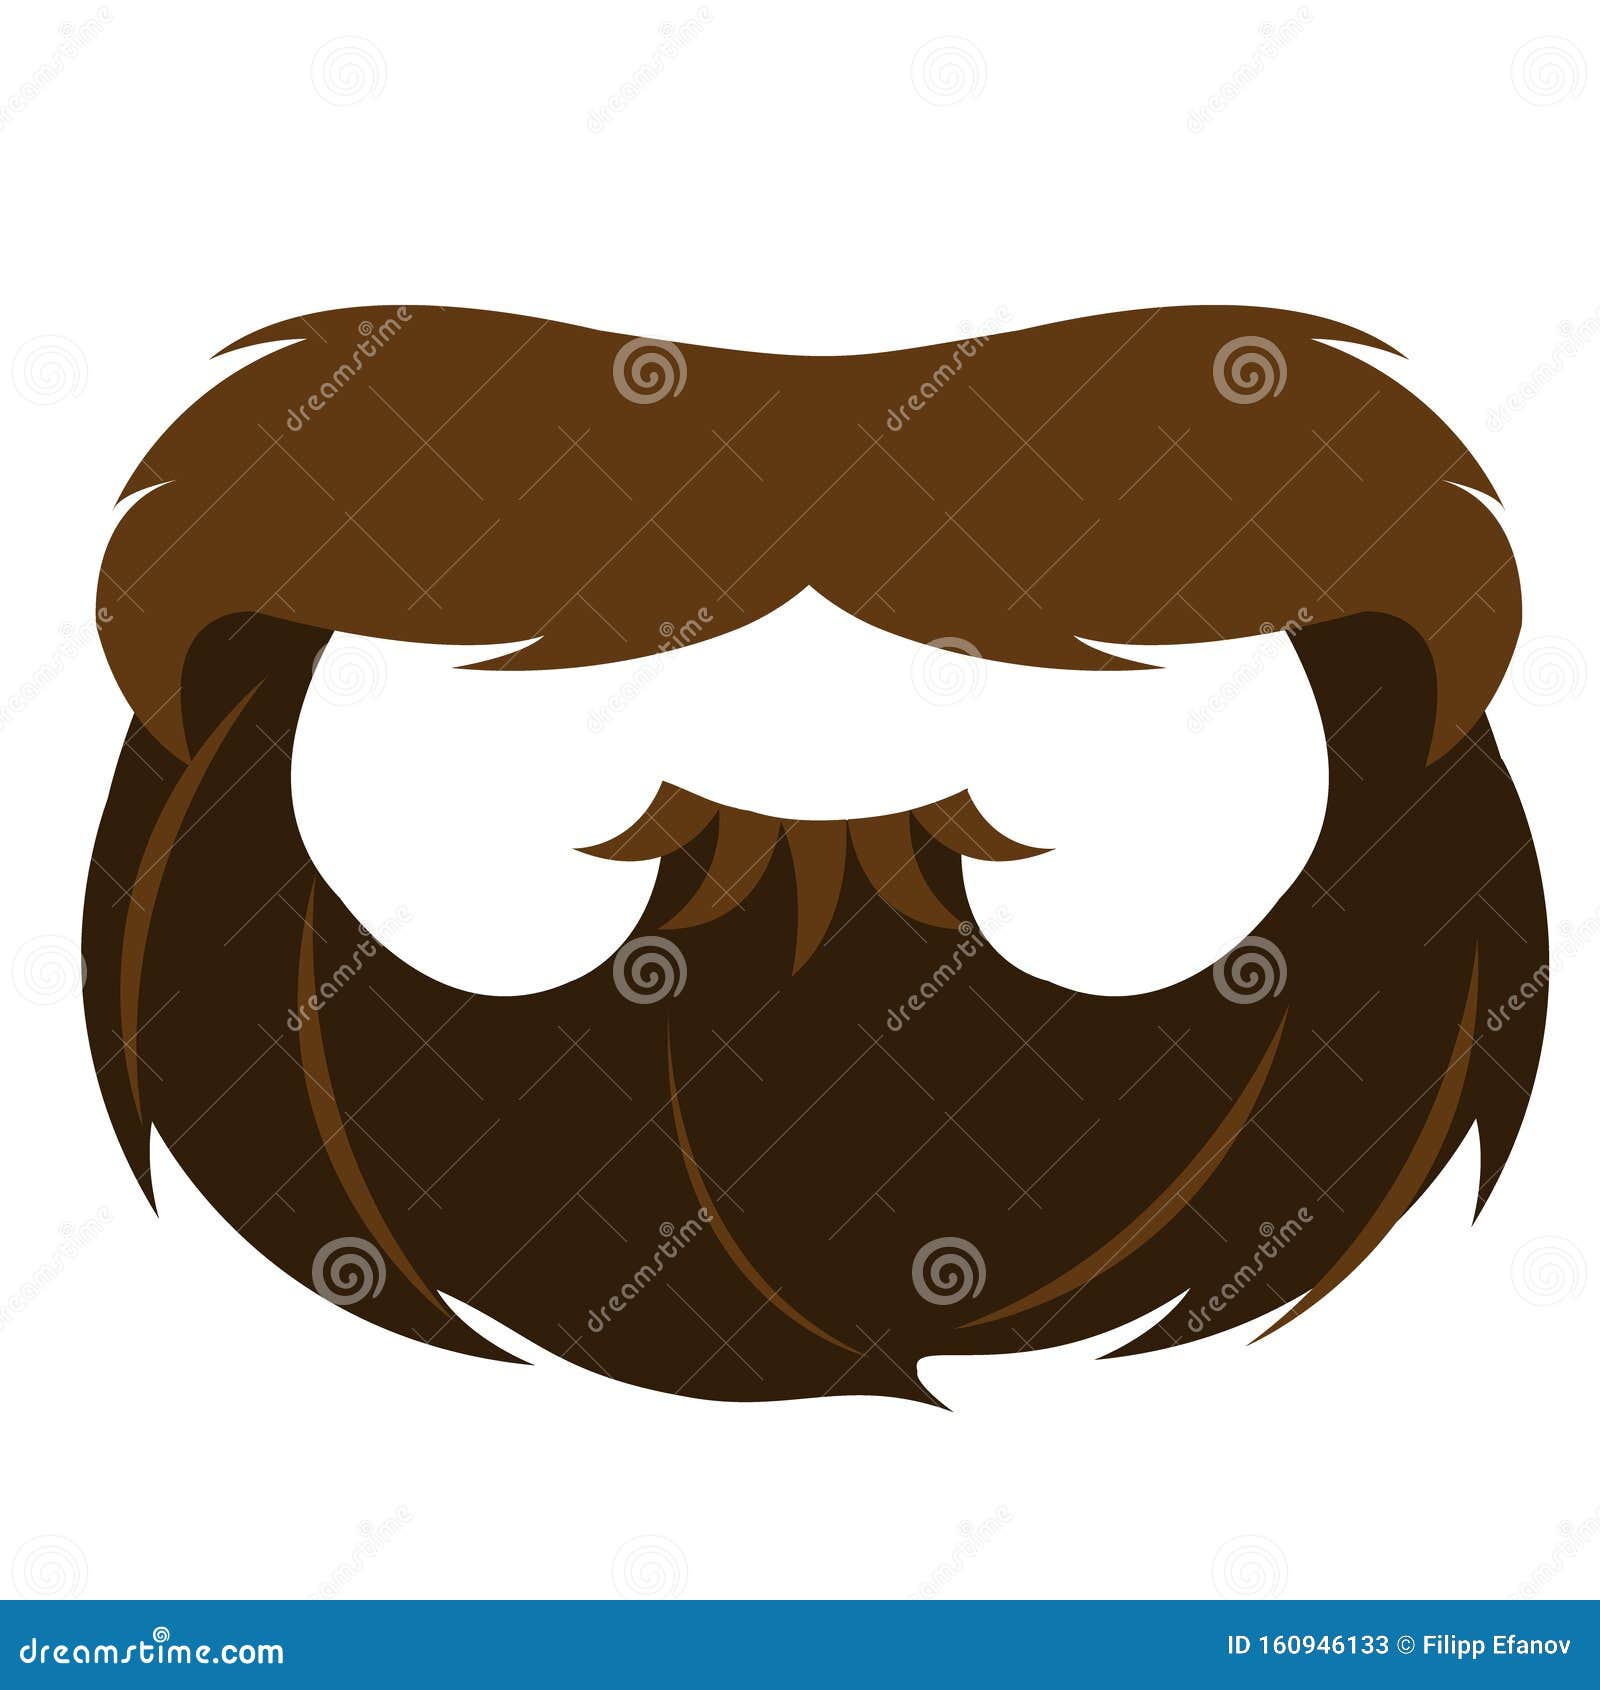 鬍子手繪png素材, 黑鬍子, 手繪鬍子, 鬍鬚形狀素材圖案，PSD和PNG圖片免費下載